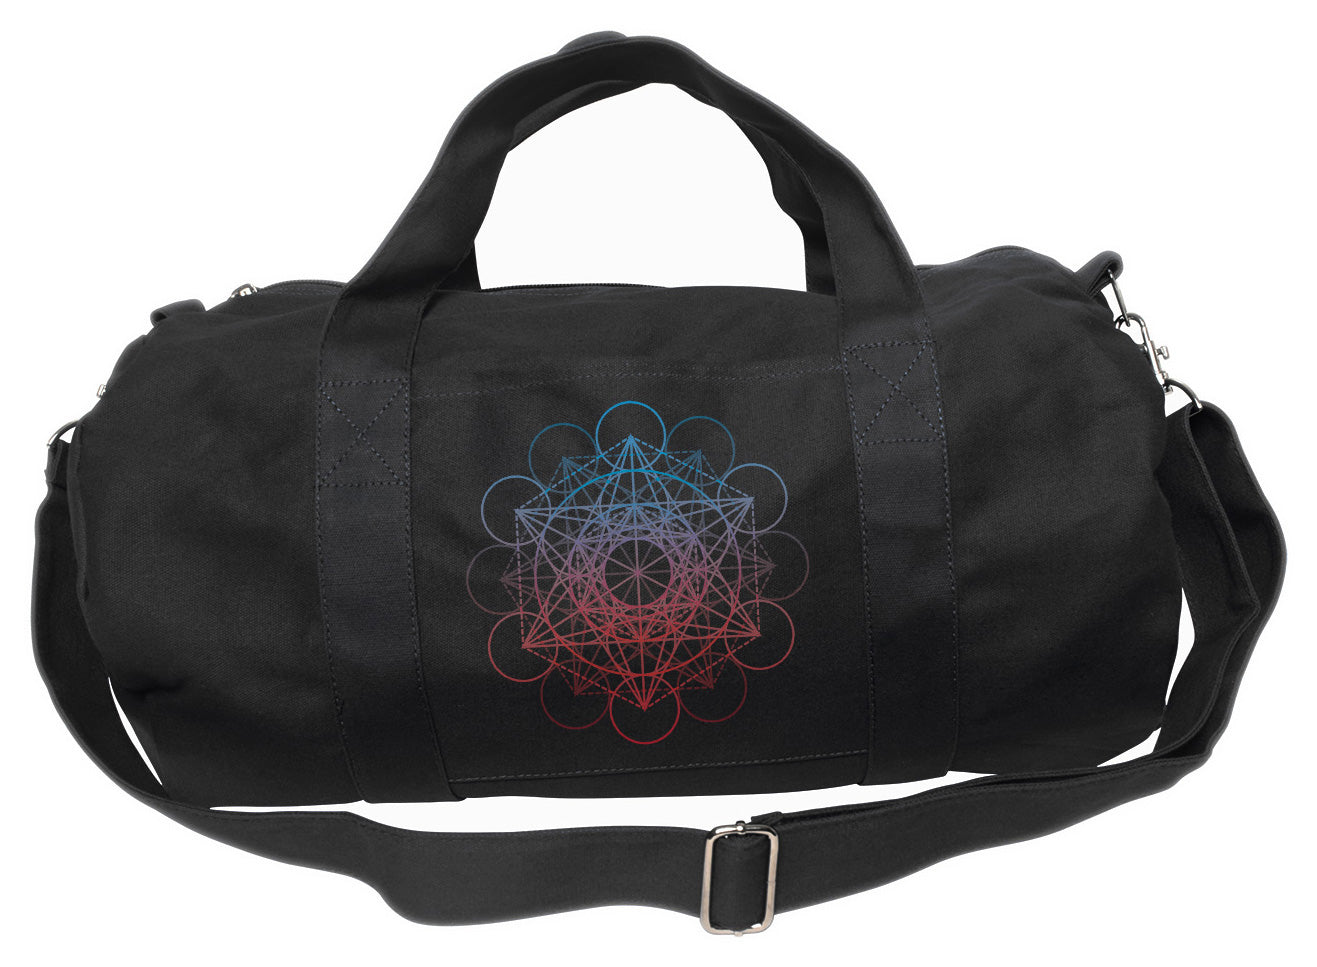 Metatrons Cube Rainbow Duffel Bag